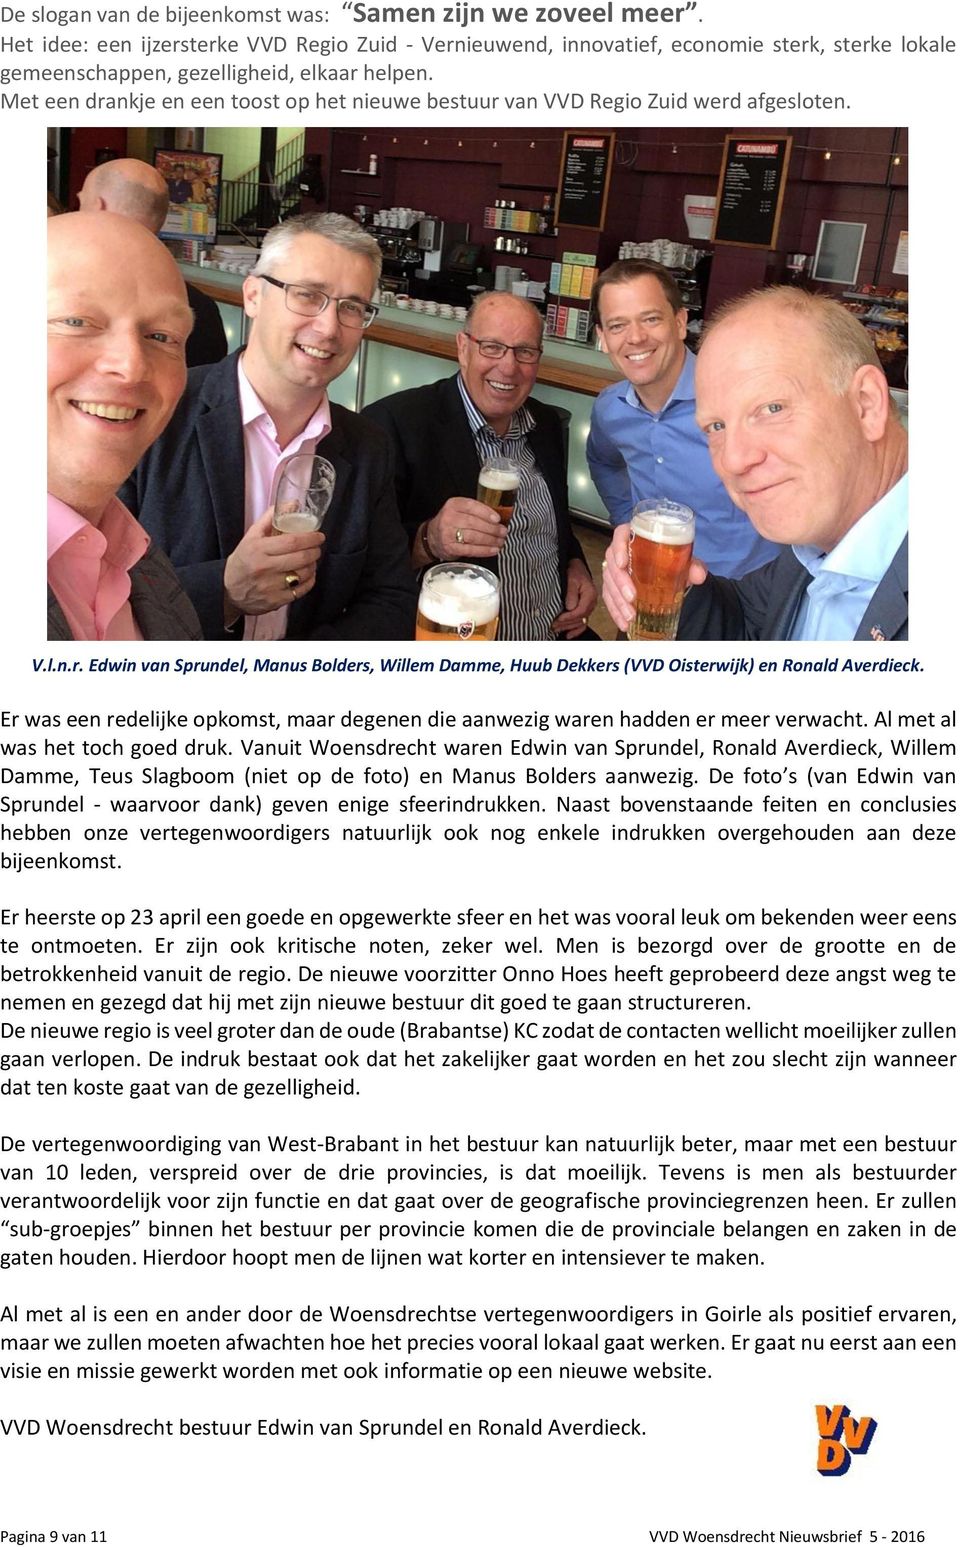 Met een drankje en een toost op het nieuwe bestuur van VVD Regio Zuid werd afgesloten. V.l.n.r. Edwin van Sprundel, Manus Bolders, Willem Damme, Huub Dekkers (VVD Oisterwijk) en Ronald Averdieck.